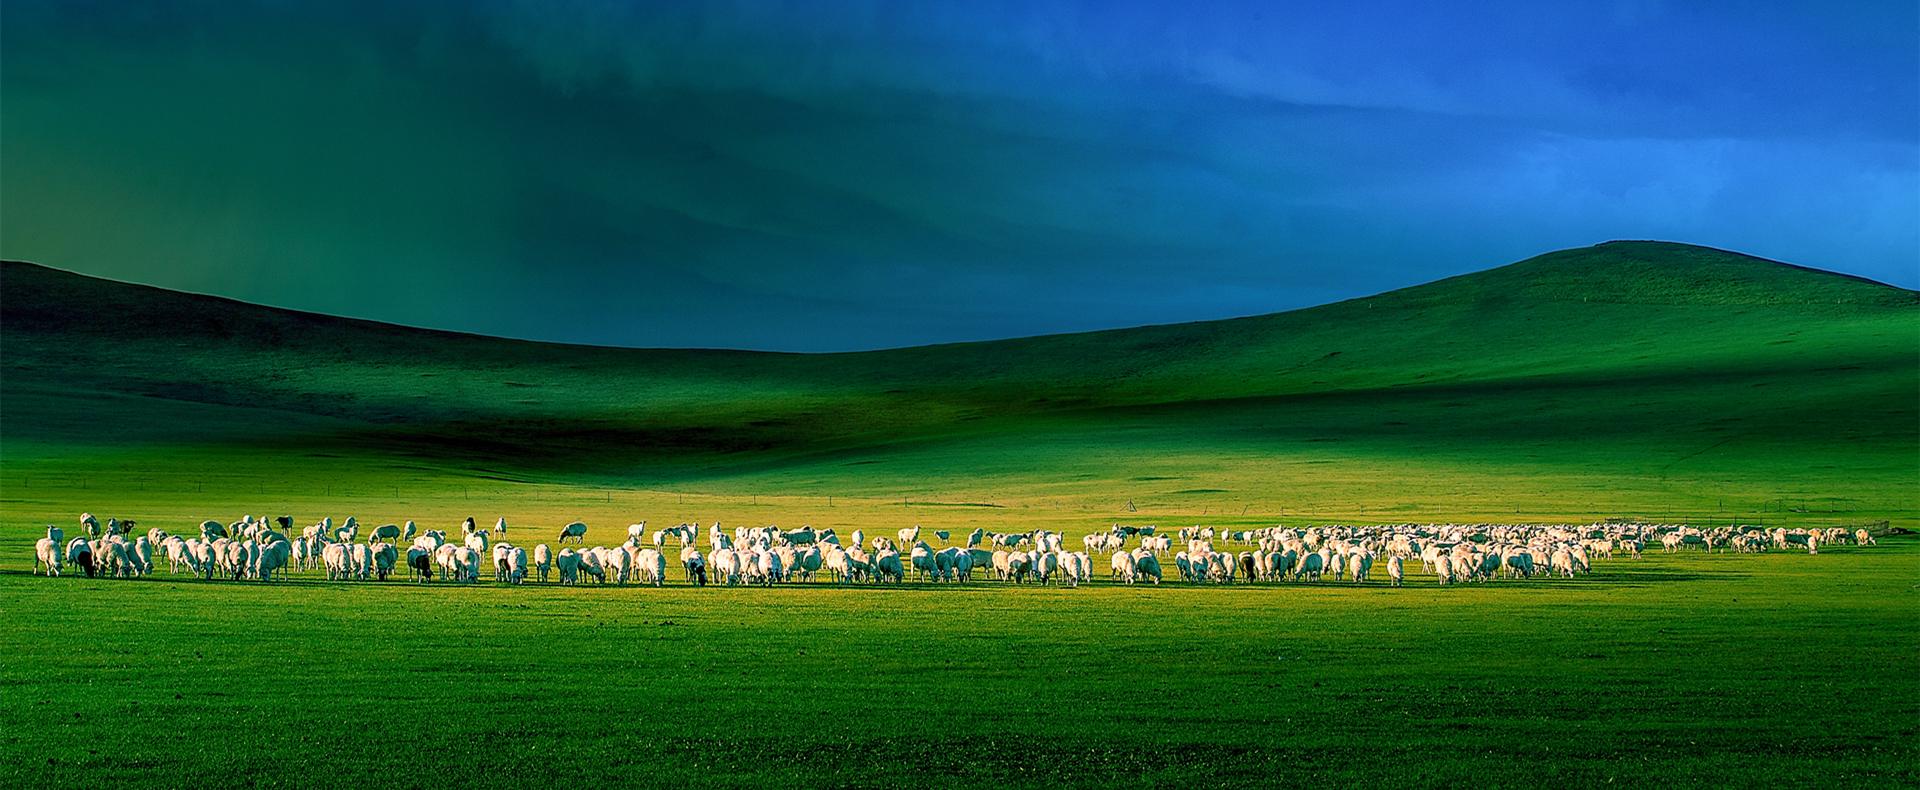 Inner Mongolia ramping up green efforts